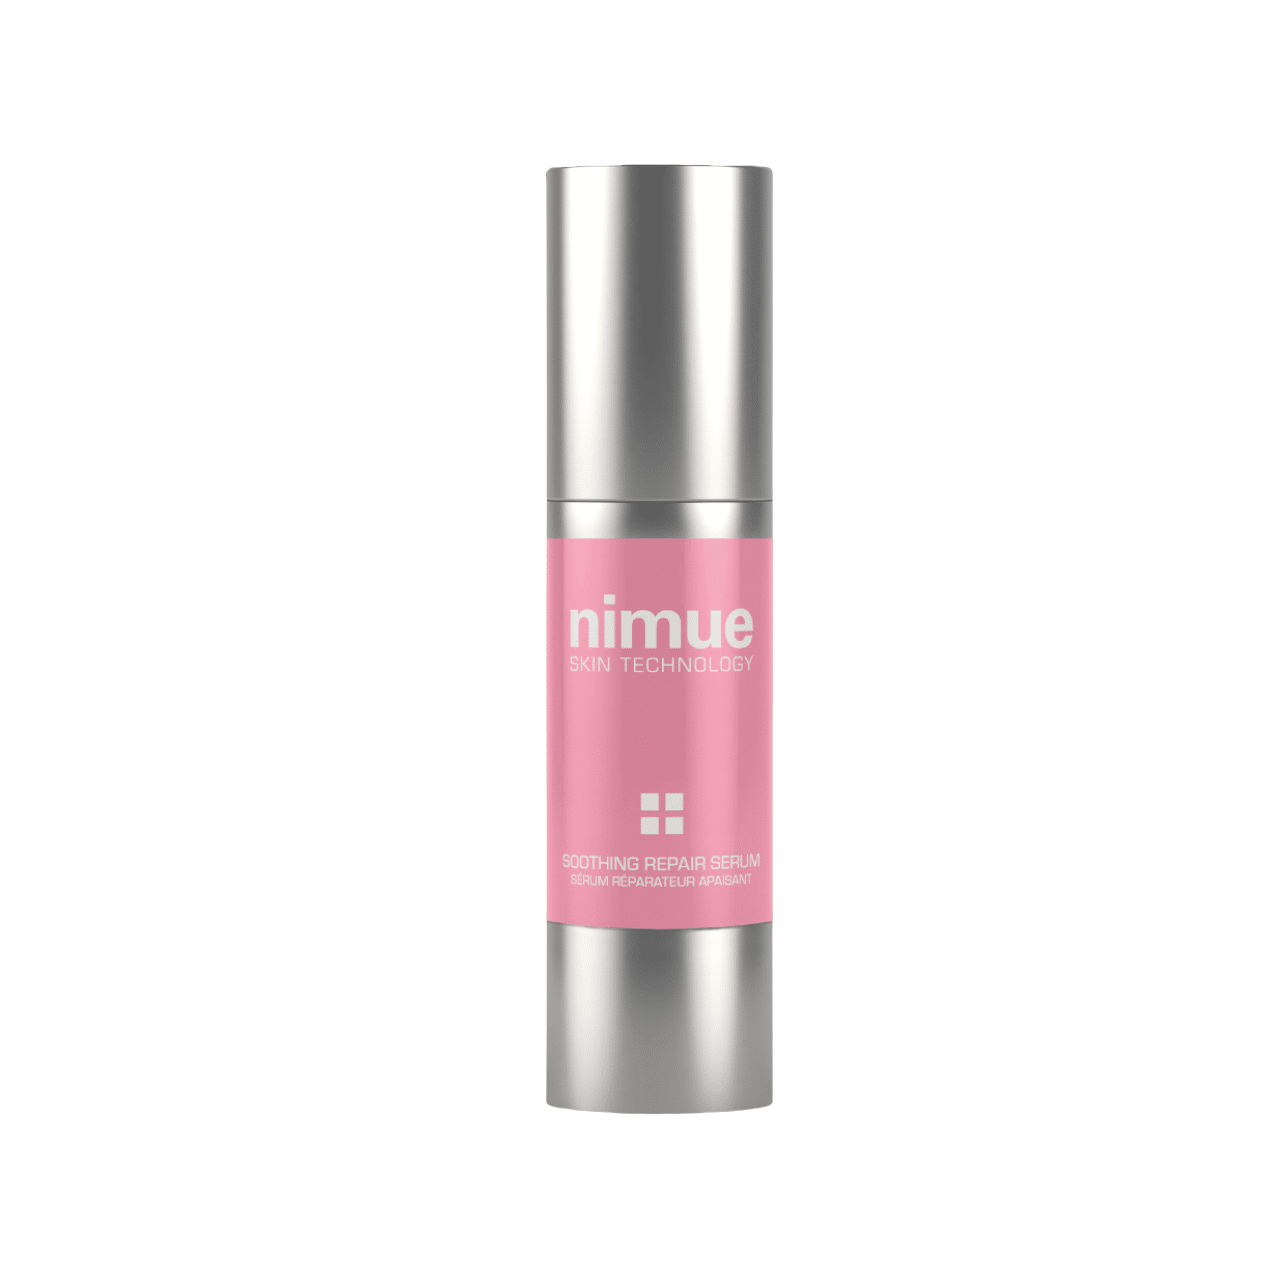 Nimue - Soothing Repair Serum 30ml